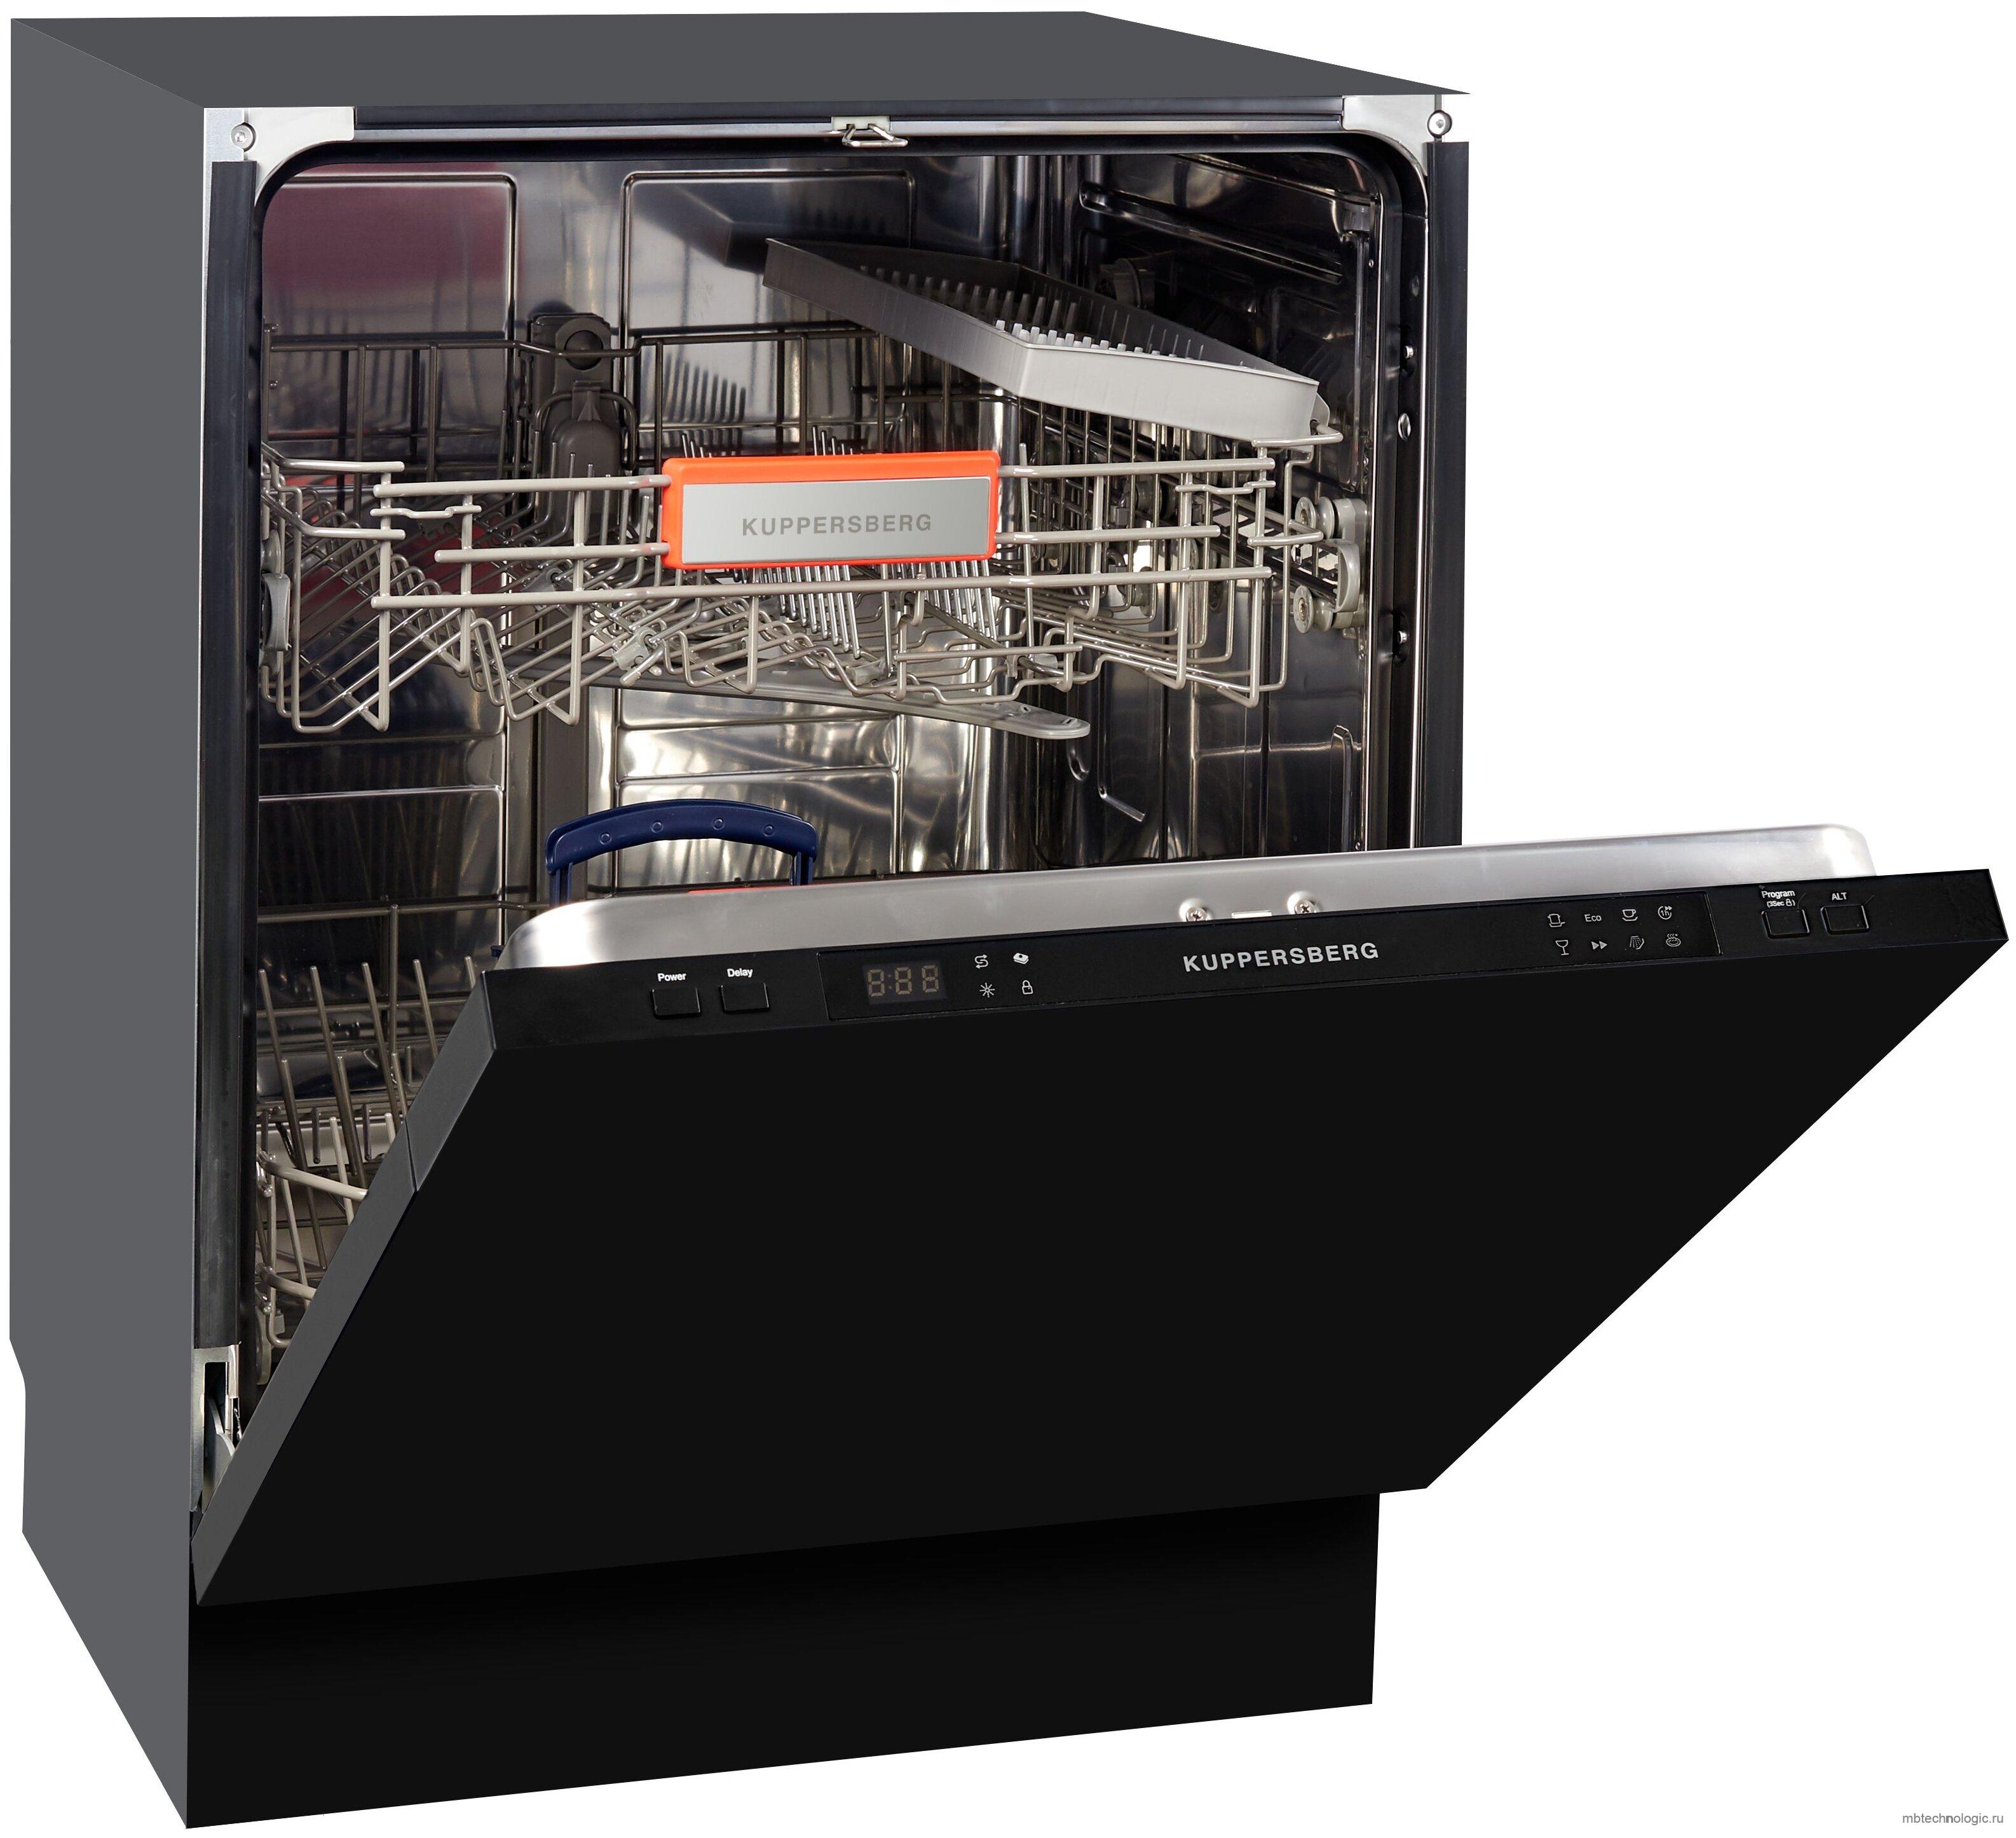 Встраиваемая посудомоечная машина черная. Kuppersberg GS 6005. Куперсберг посудомоечная машина 60. Посудомоечная машина 60 Kuppersberg встраиваемая. Посудомоечная машина Куперсберг 60 см.